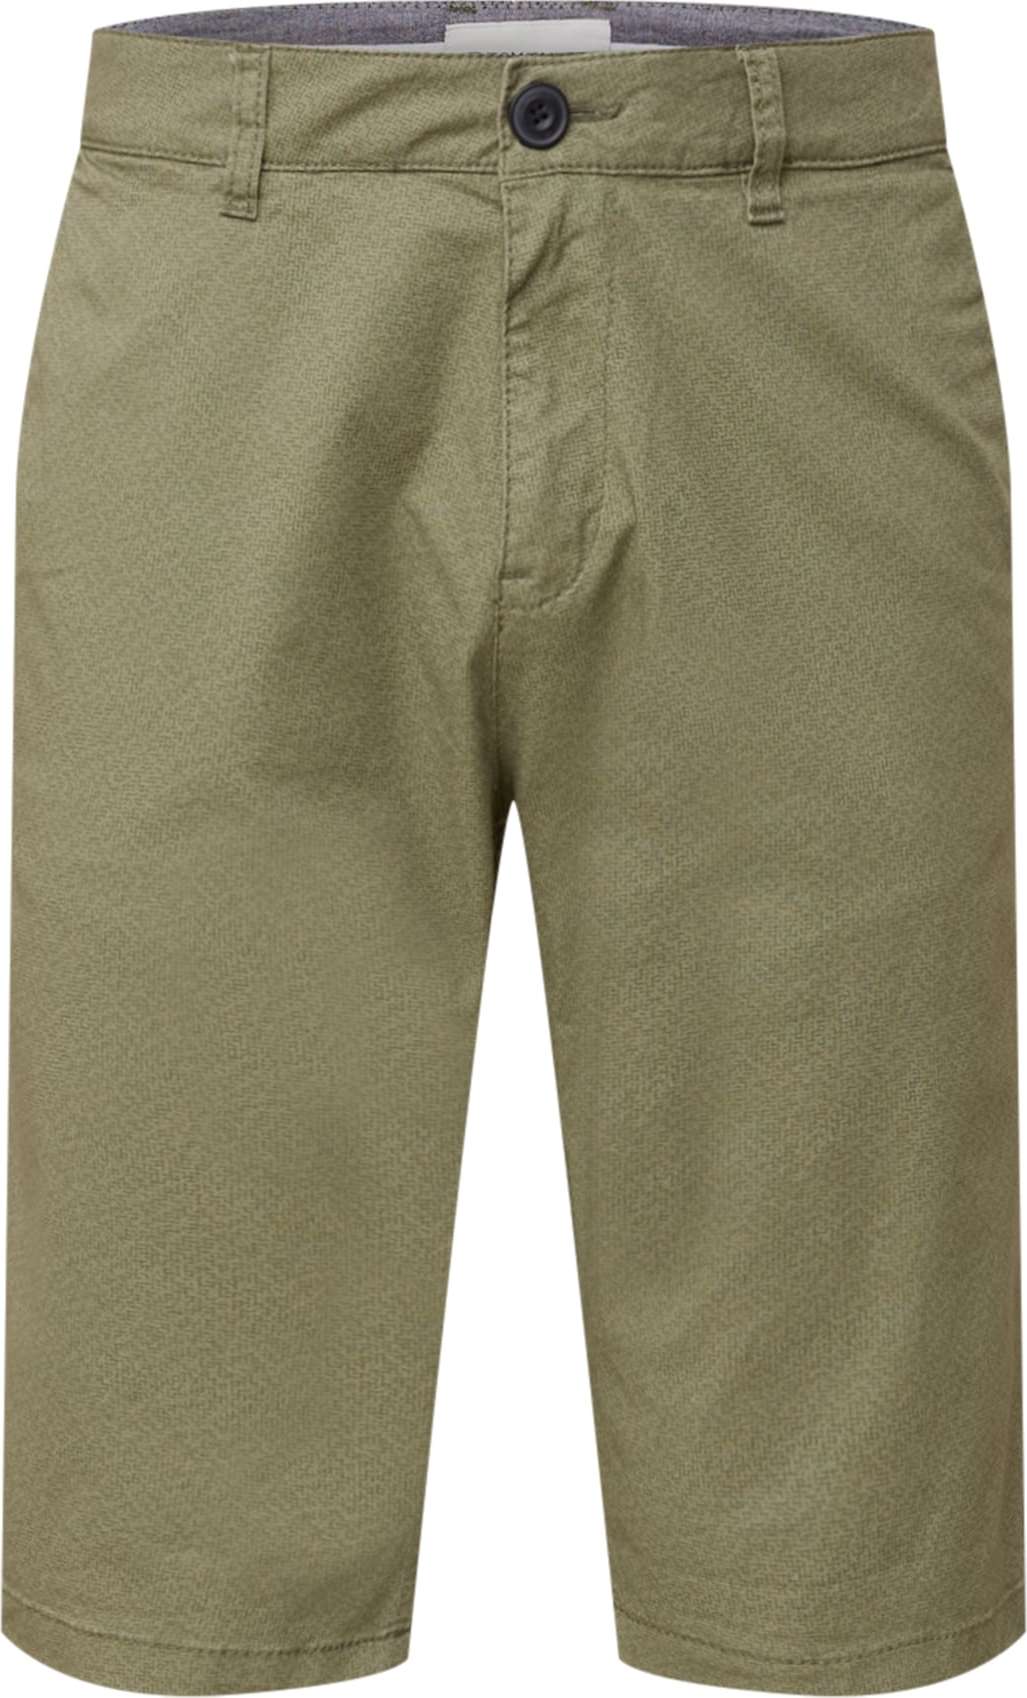 TOM TAILOR Chino kalhoty khaki / olivová